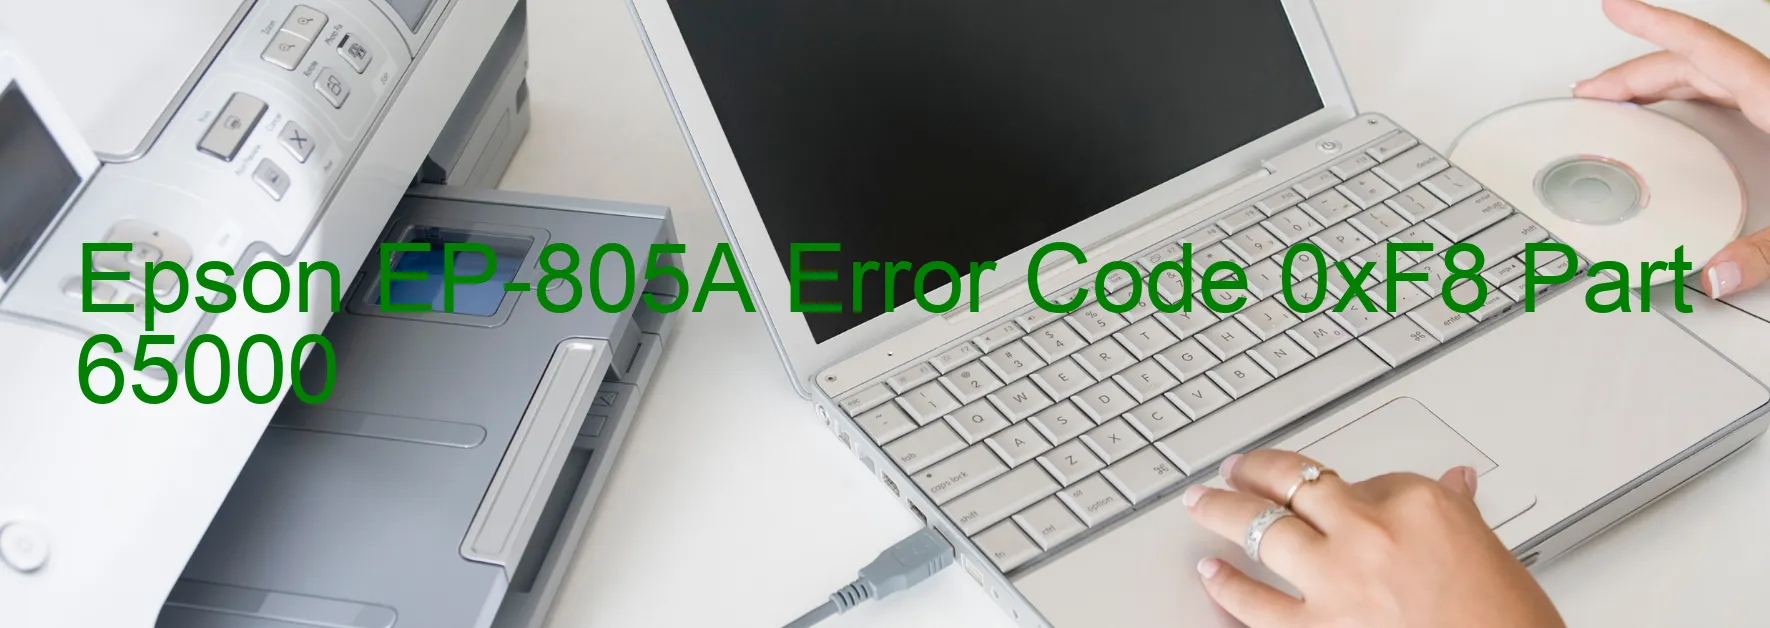 Epson EP-805A Error Code 0xF8 Part 65000